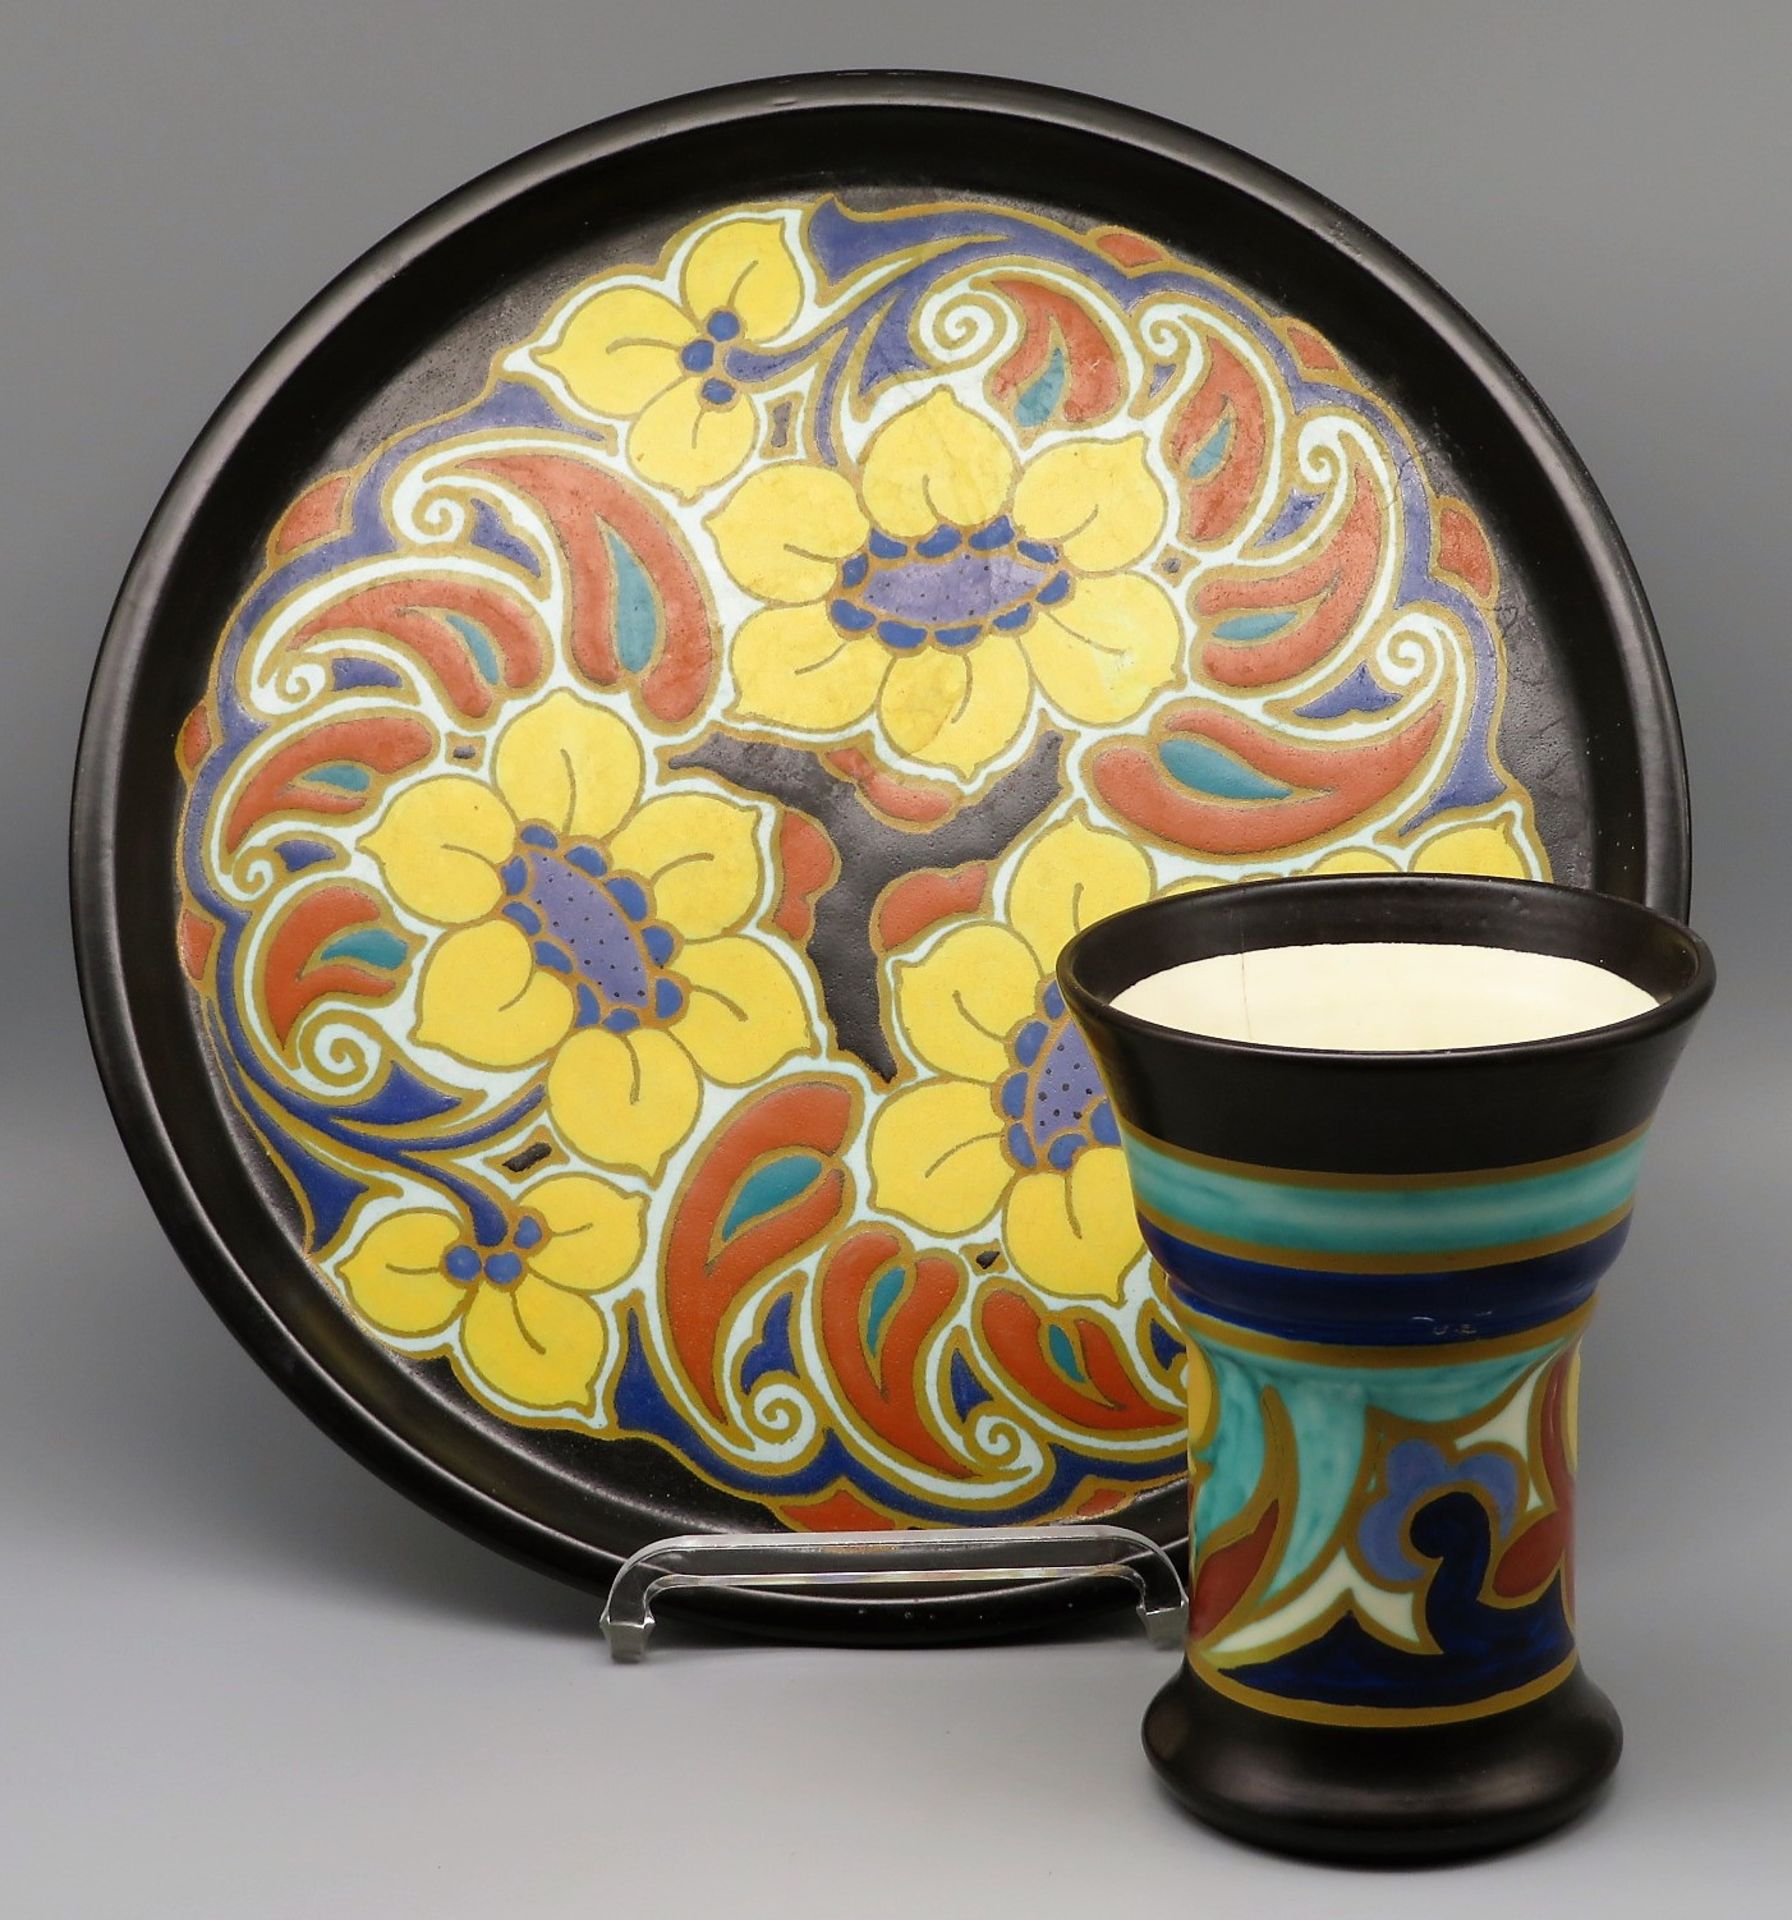 Tablett und Vase, Jugendstil, um 1900, Fayence mit polychromer Bemalung von Blüten, gem. "Arnhem Er